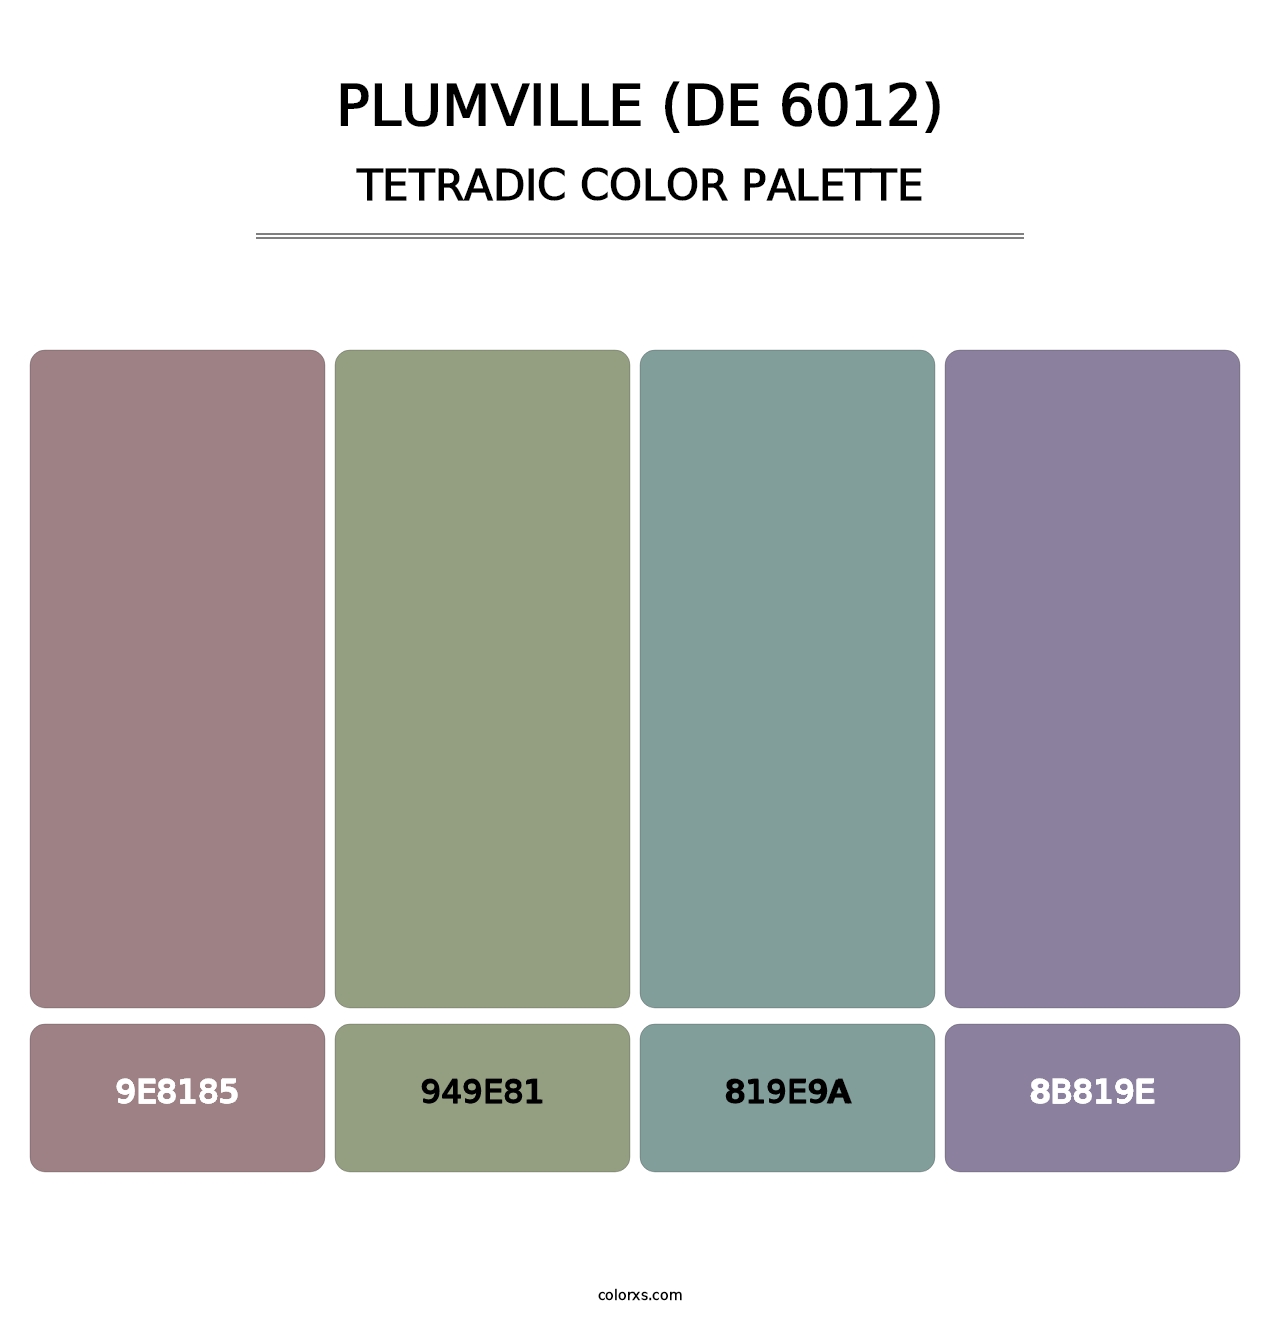 Plumville (DE 6012) - Tetradic Color Palette